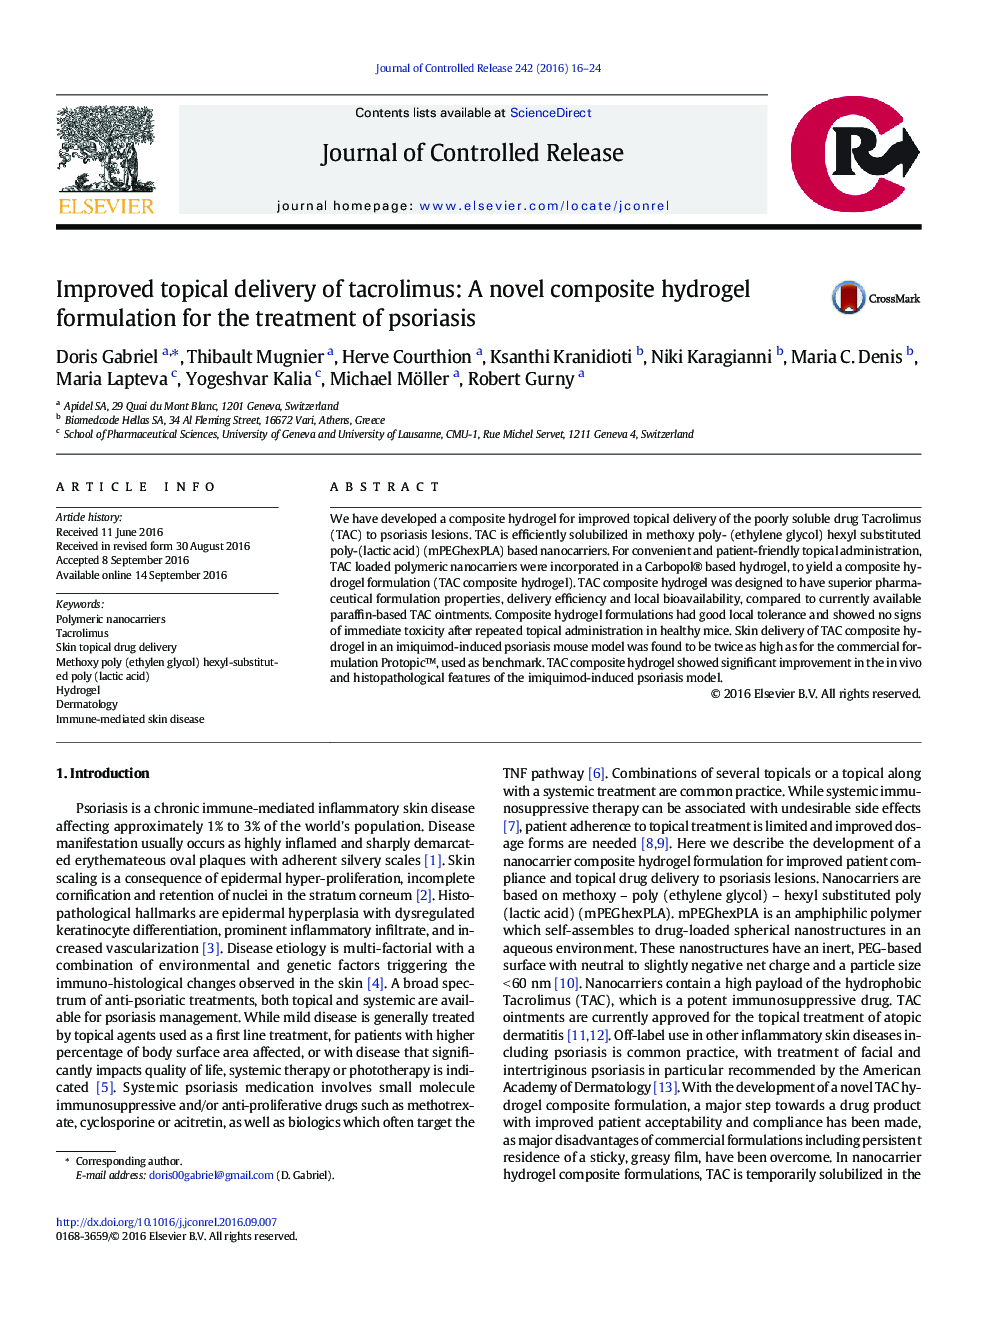 تحویل موضعی بهبود یافته تاکرولیموس: فرمول ترکیب هیدروژل کامپوزیتی برای درمان پسوریازیس 